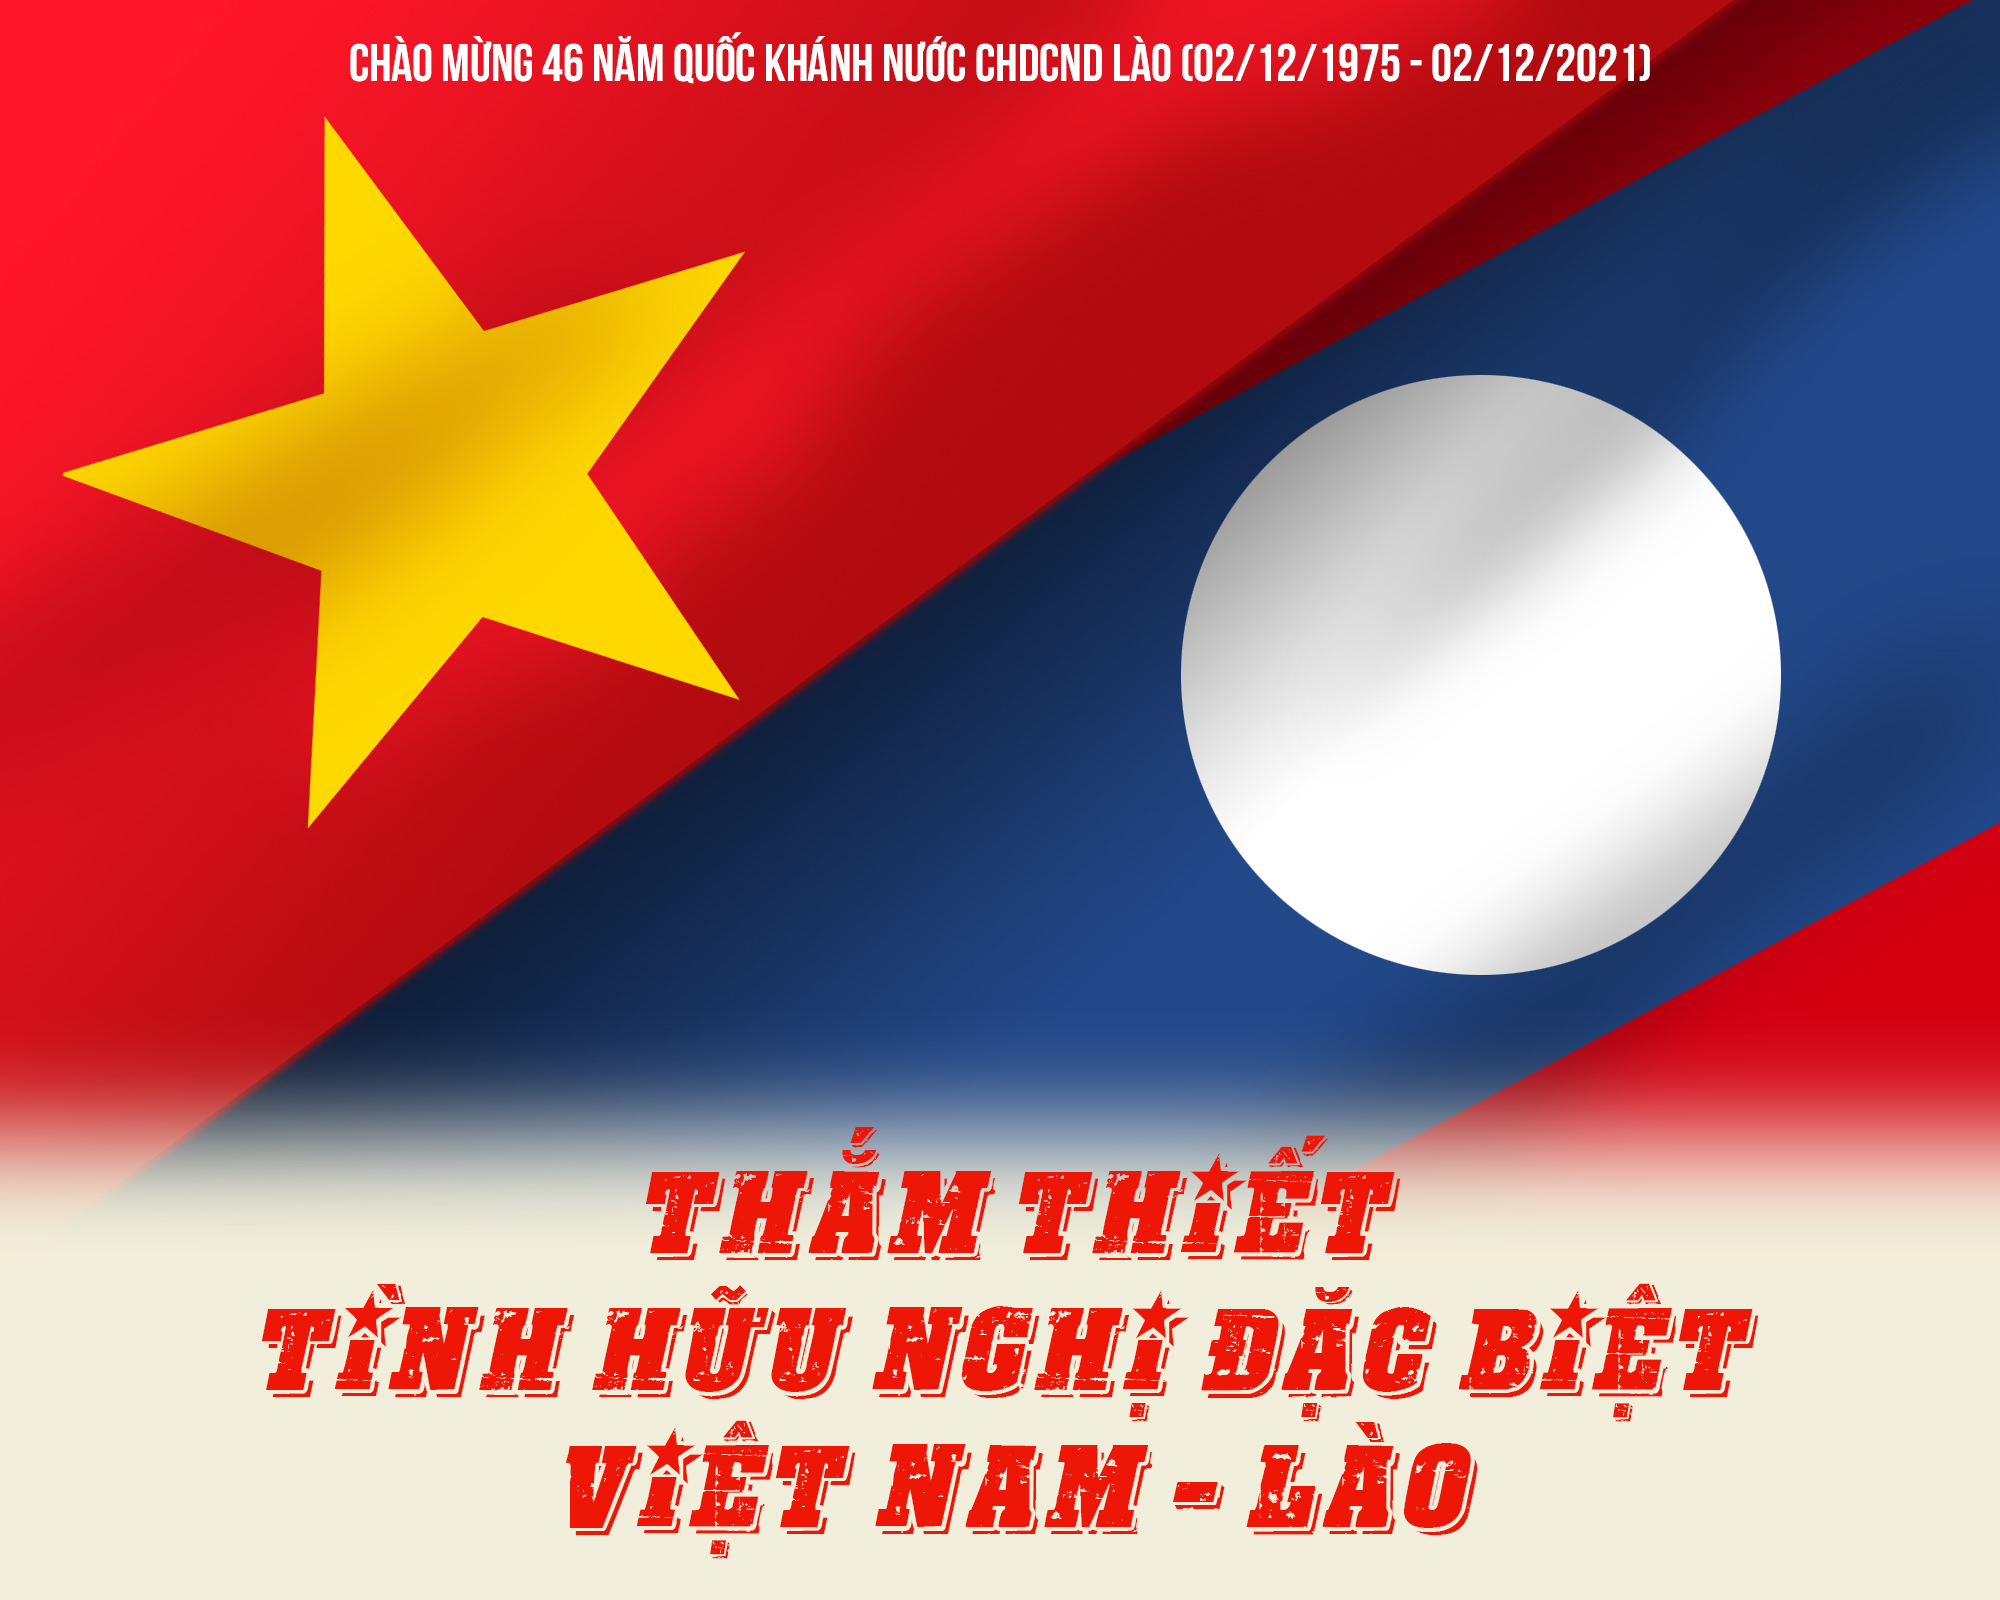 Việt Nam – Lào hữu nghị 2024: Tình hữu nghị giữa Việt Nam và Lào sẽ được thắt chặt hơn nữa. Chúng ta sẽ đồng hành cùng nhau trong nhiều dự án, giúp đỡ nhau trong mọi tình huống. Hãy để tình đồng chí sâu đậm được khẳng định và một tương lai viên mãn cho Việt Nam - Lào sẽ đến.